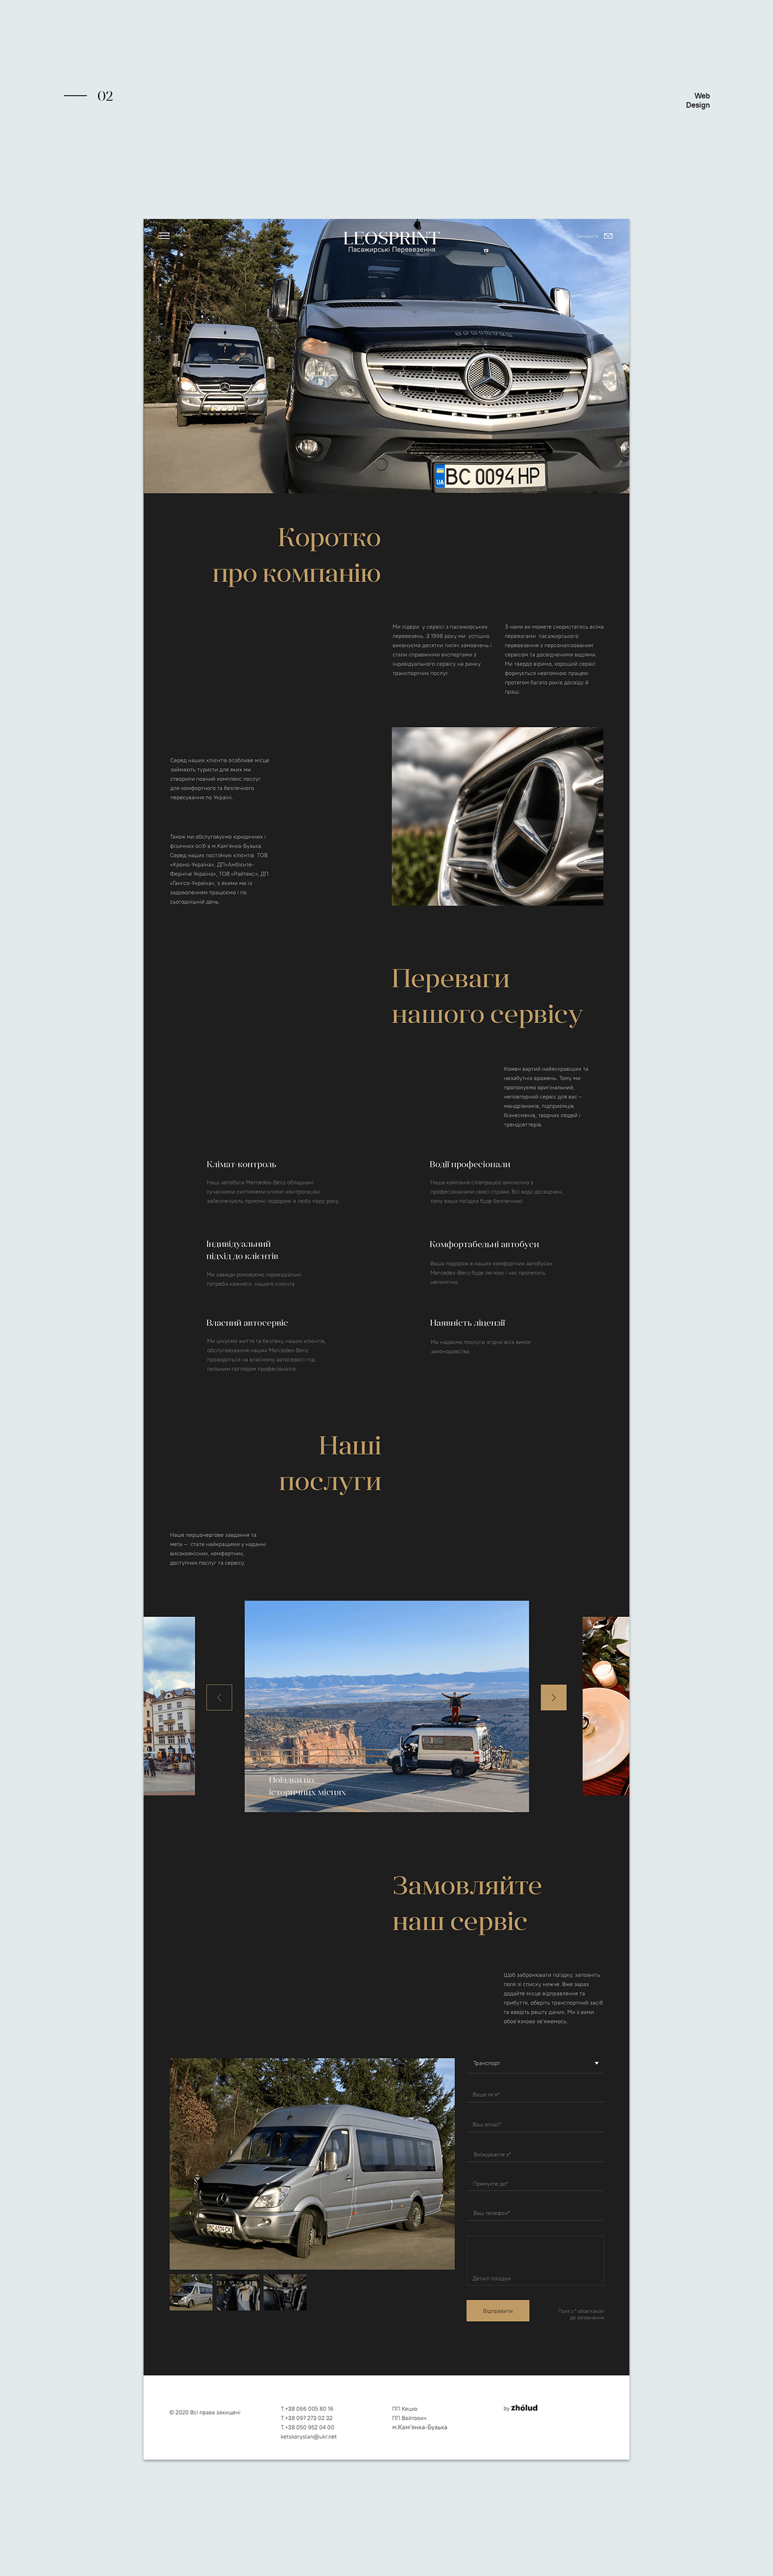 branding  landing page redesign Web Design 